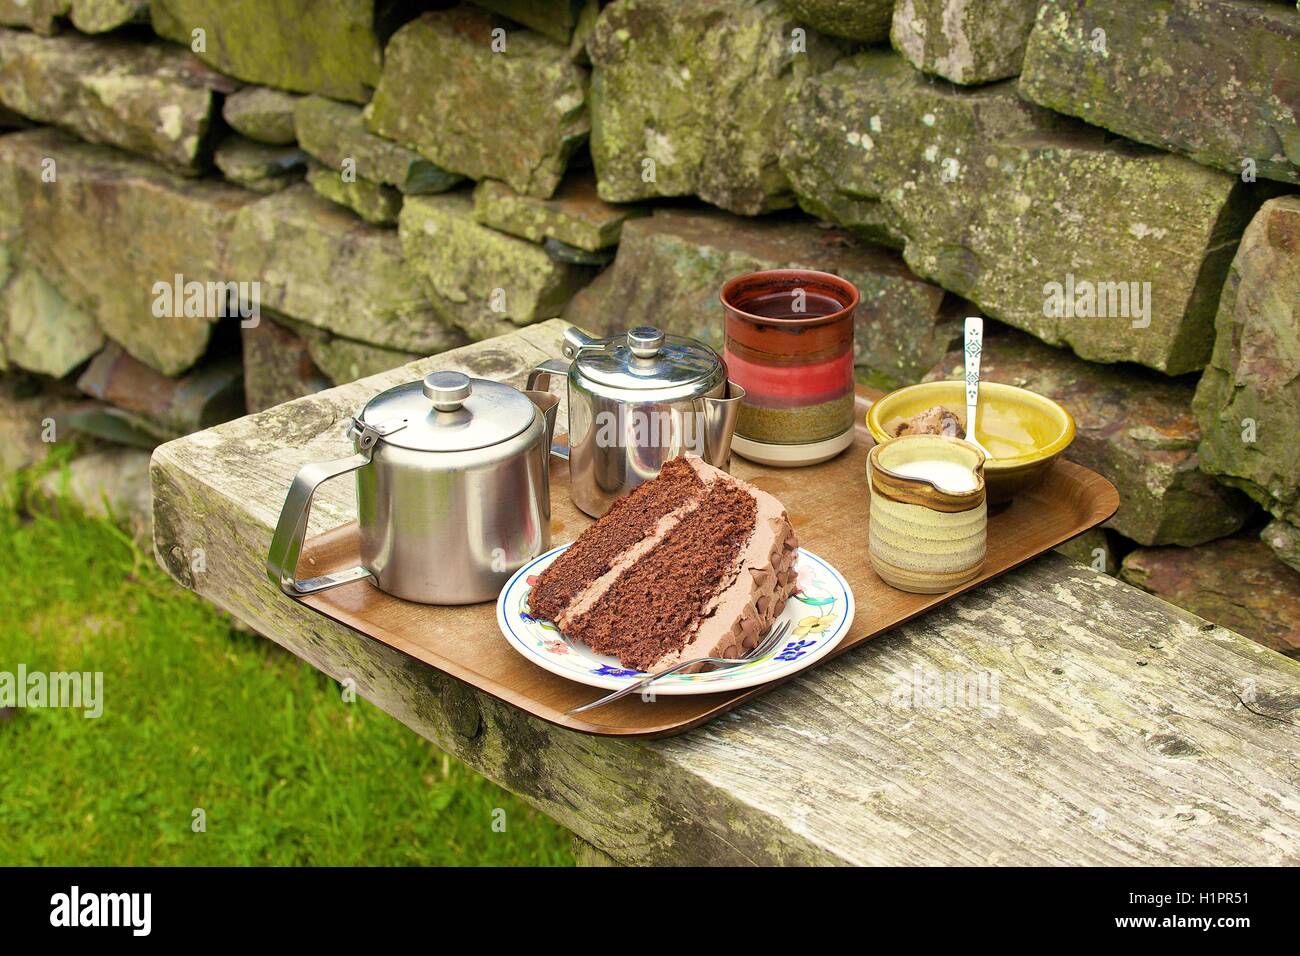 Thé et chocolat gâteau sur un plateau sur un banc à l'extérieur. Mosedale Coffee Shop, Temple Quaker, Mosedale, Cumbria, England, UK. Banque D'Images